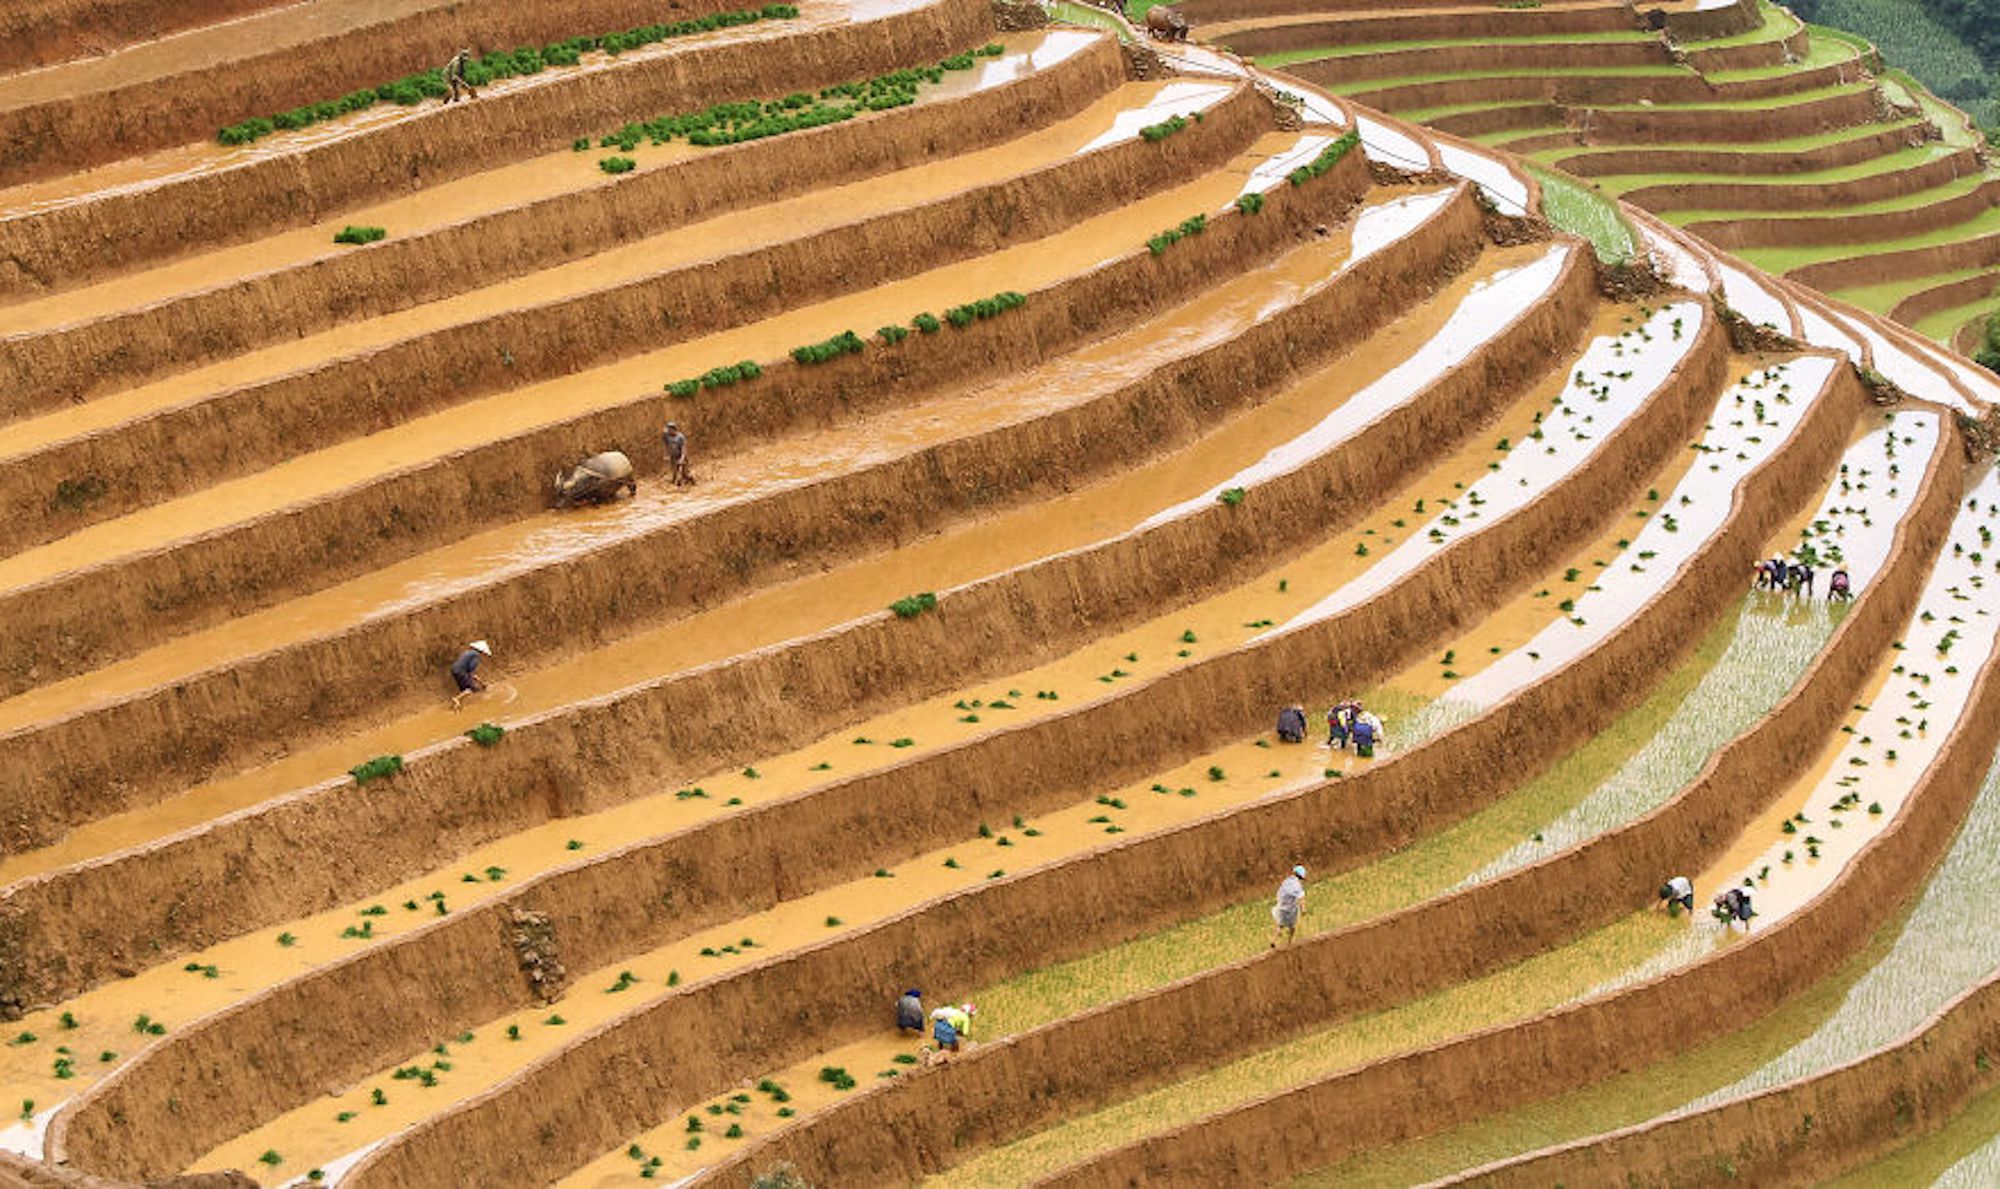  Foto dos campos de arroz no norte do Vietnã